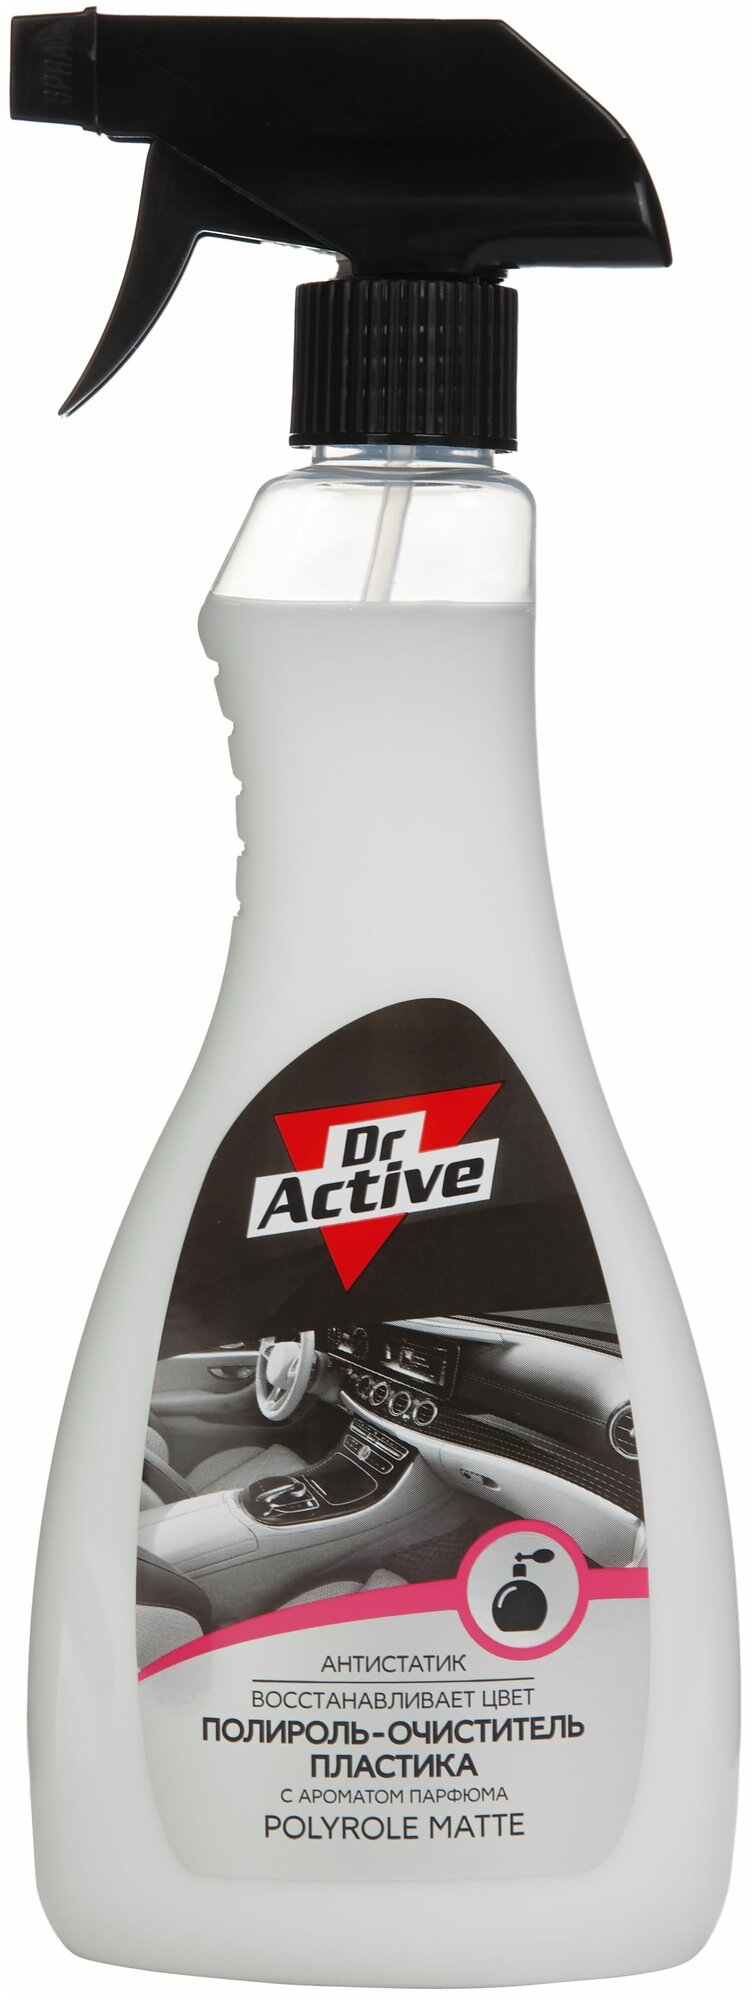 Матовый полироль-очиститель пластика Dr. Active MATTE с парфюмированным ароматом 500 мл спрей